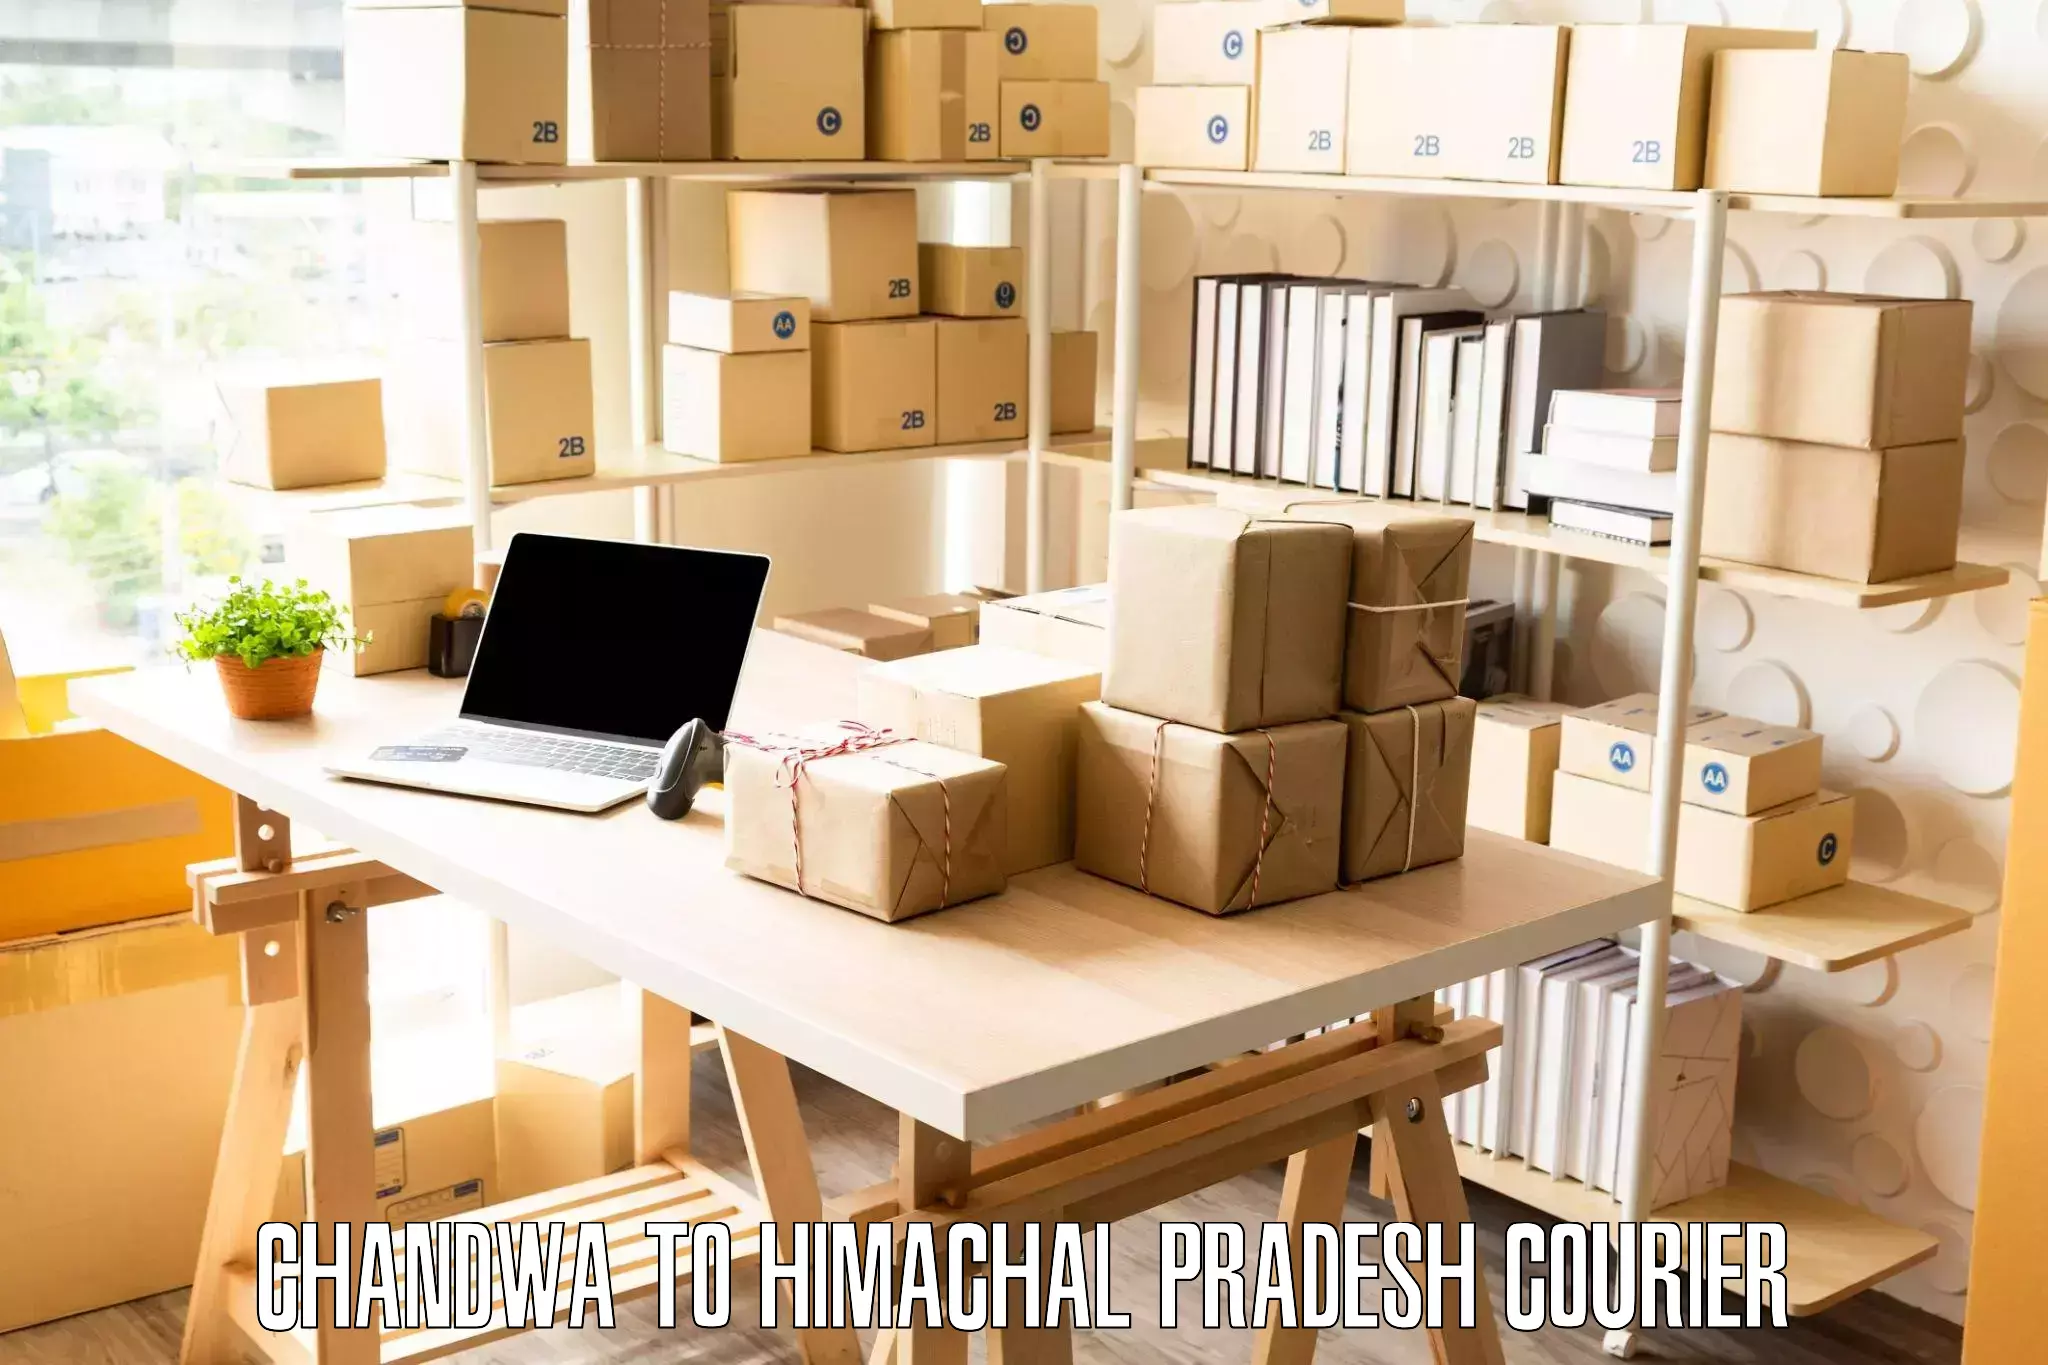 Furniture moving service Chandwa to Himachal Pradesh